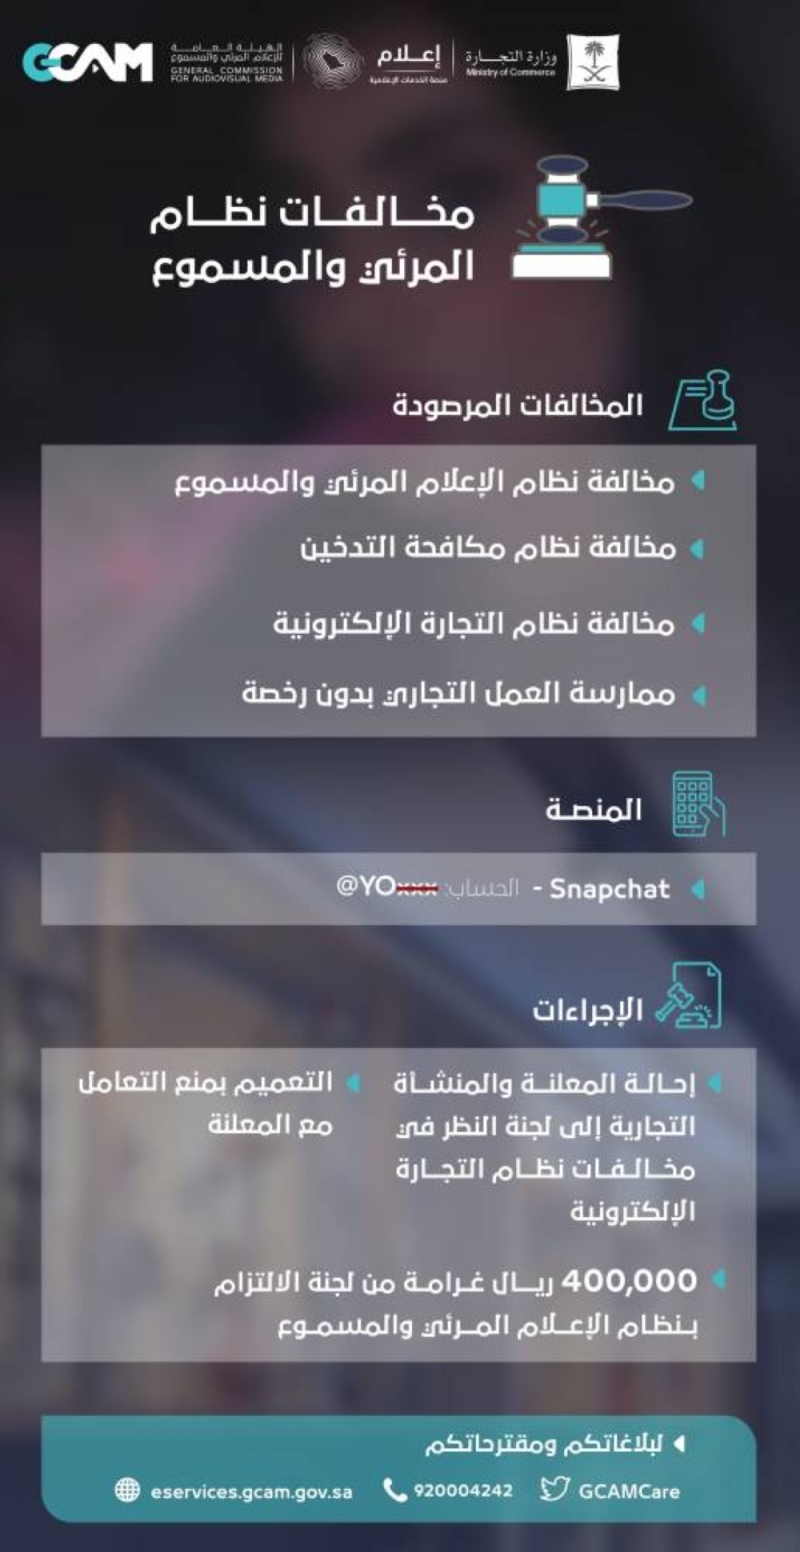 تغريم مشهورة سناب شات من جنسية عربية بـ400 ألف ريال وإيقاف جميع إعلاناتها داخل السعودية